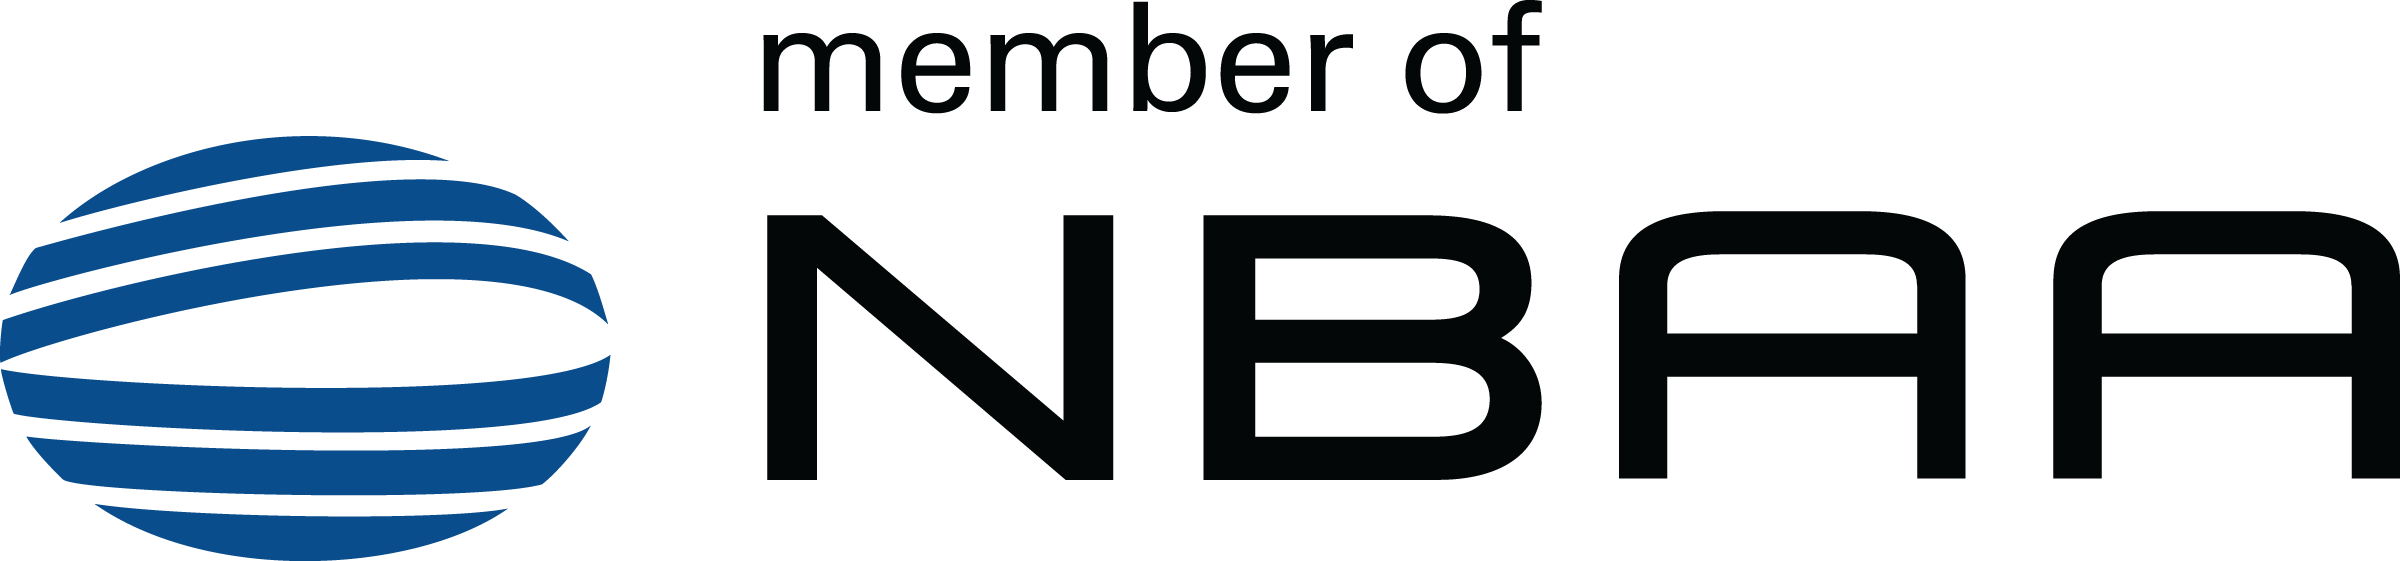 NBAA (National Business Aviation Association) Member